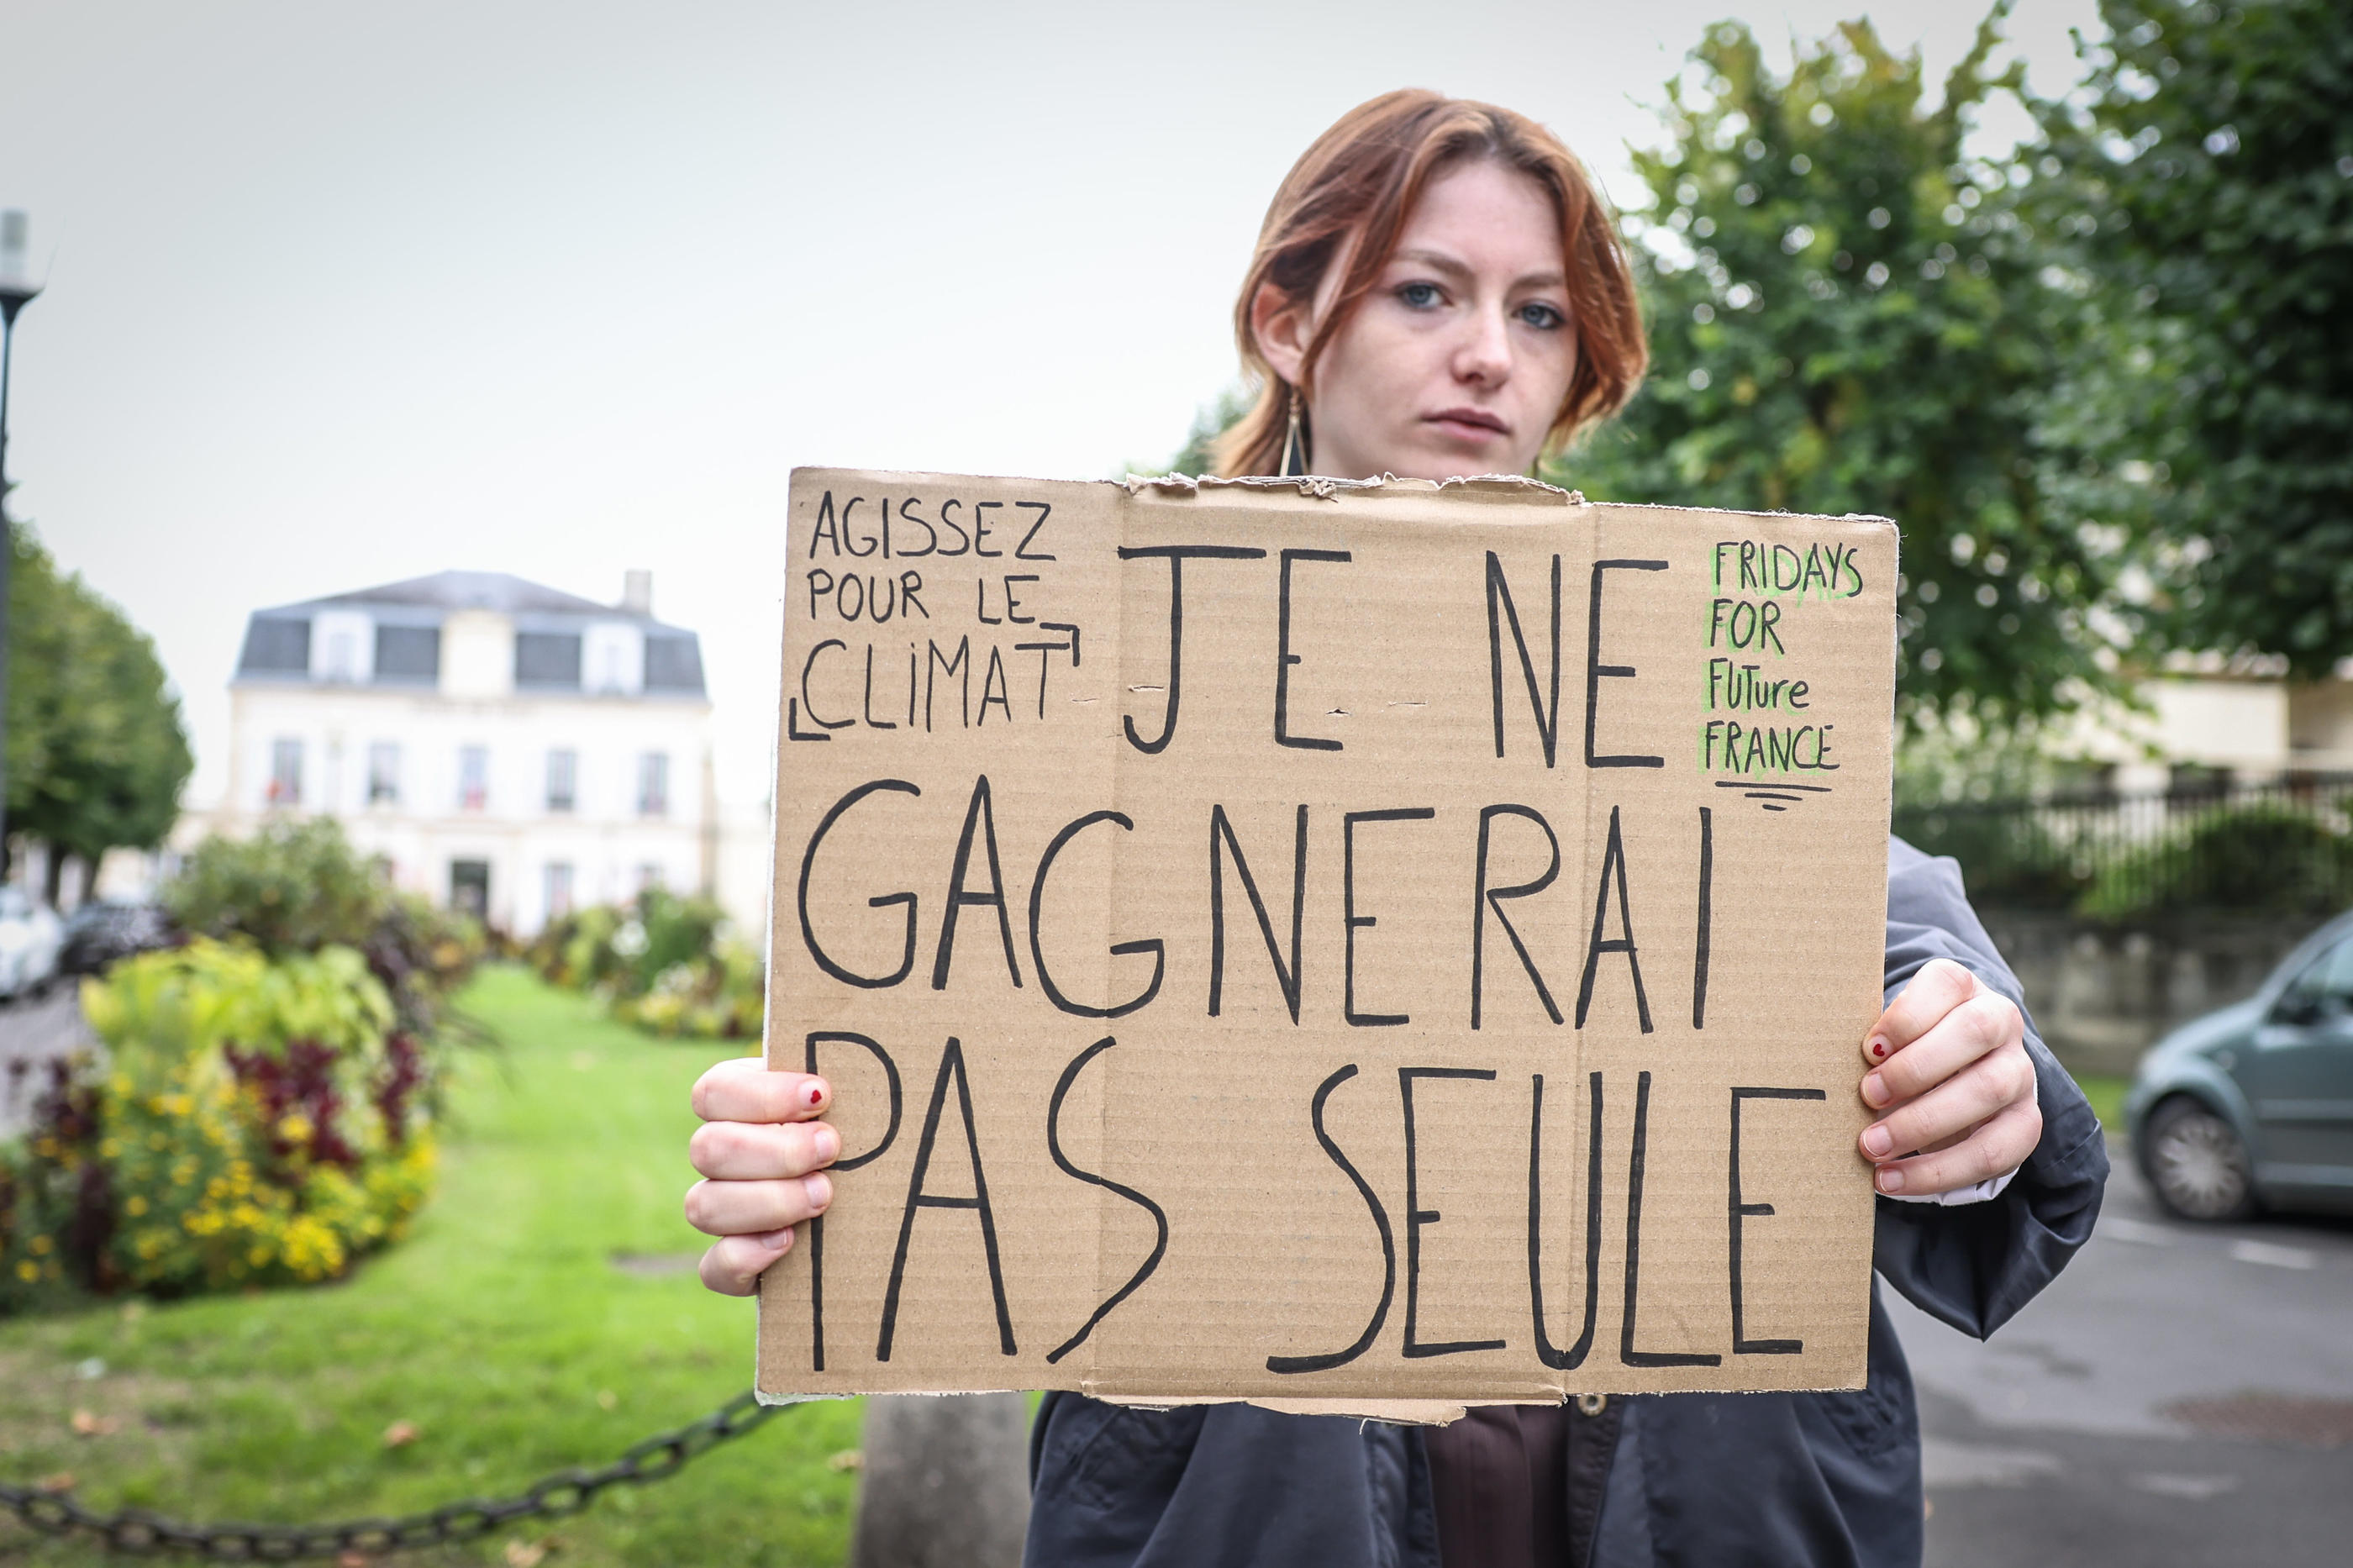 Mélissandre est allée manifester devant la mairie de Chantilly, ce vendredi matin, à l'appel du mouvement Fridays for Future France, pour interpeller les passants sur les désastres écologiques. LP/Fred Dugit